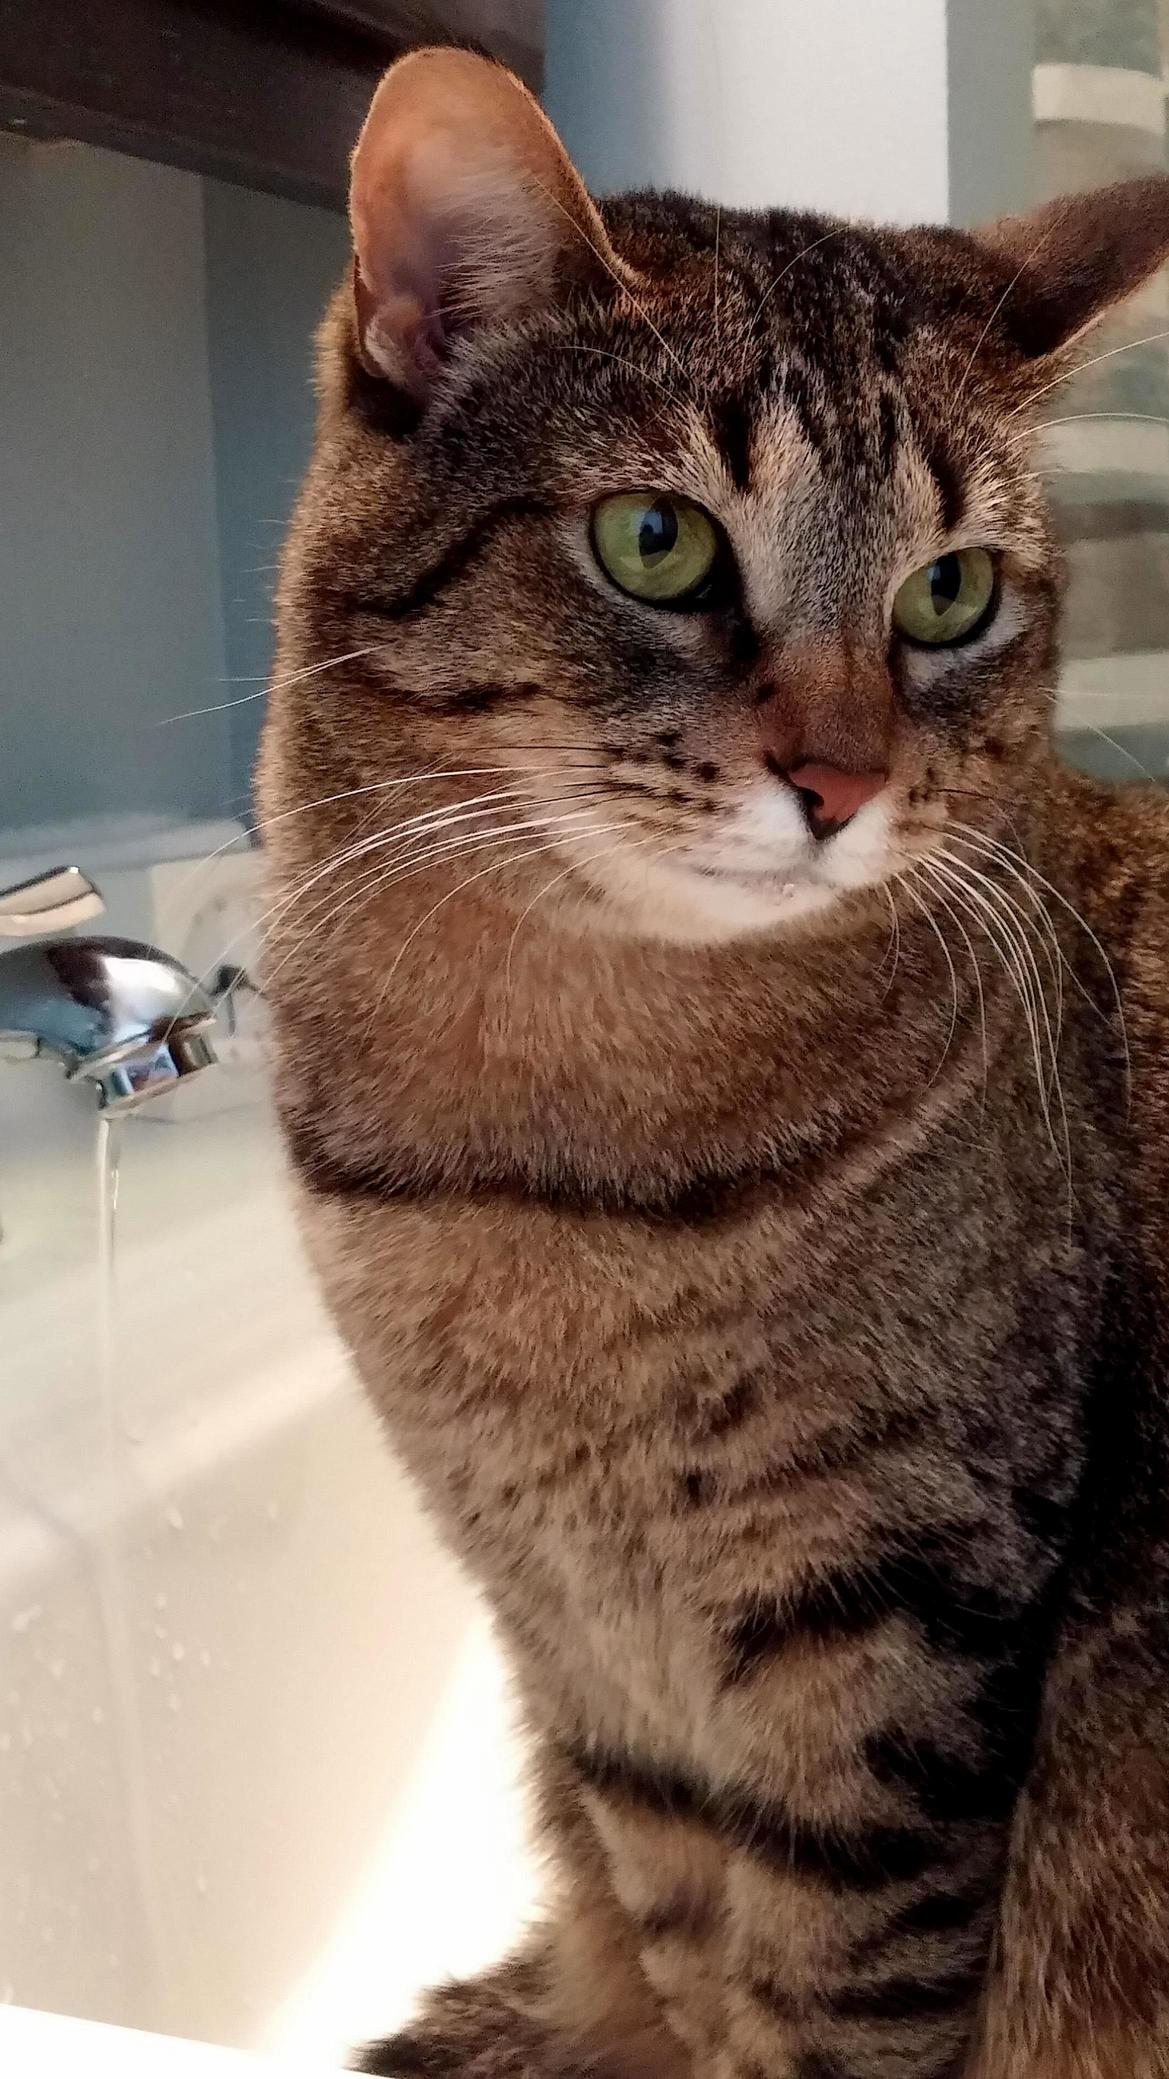 Leeloo loves her water..